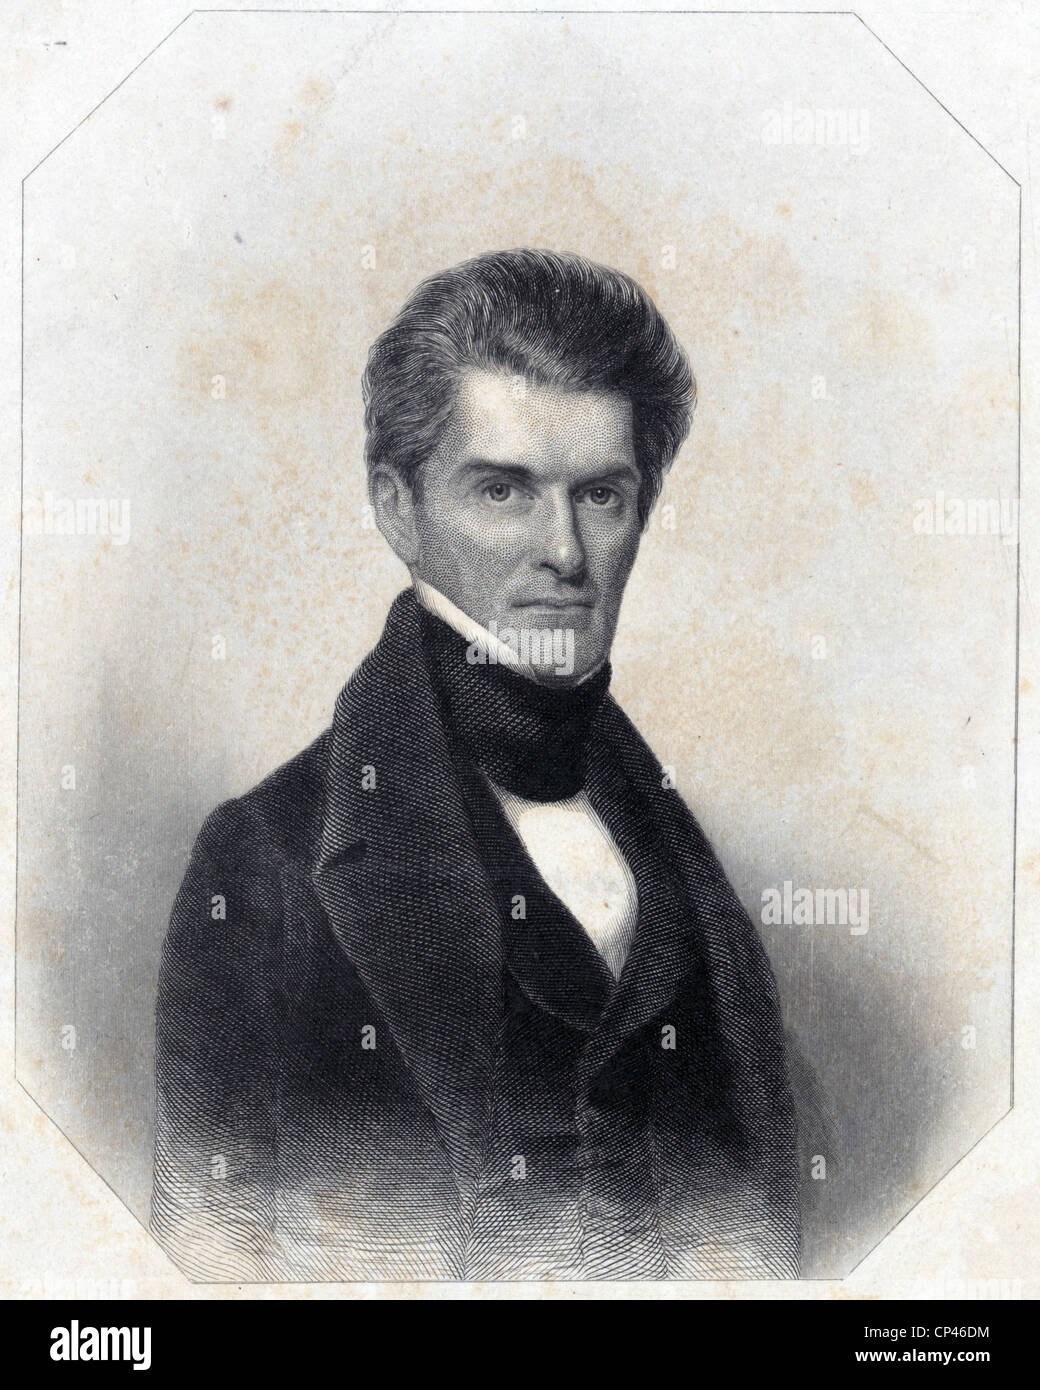 John C. Calhoun, 1830s Foto de stock